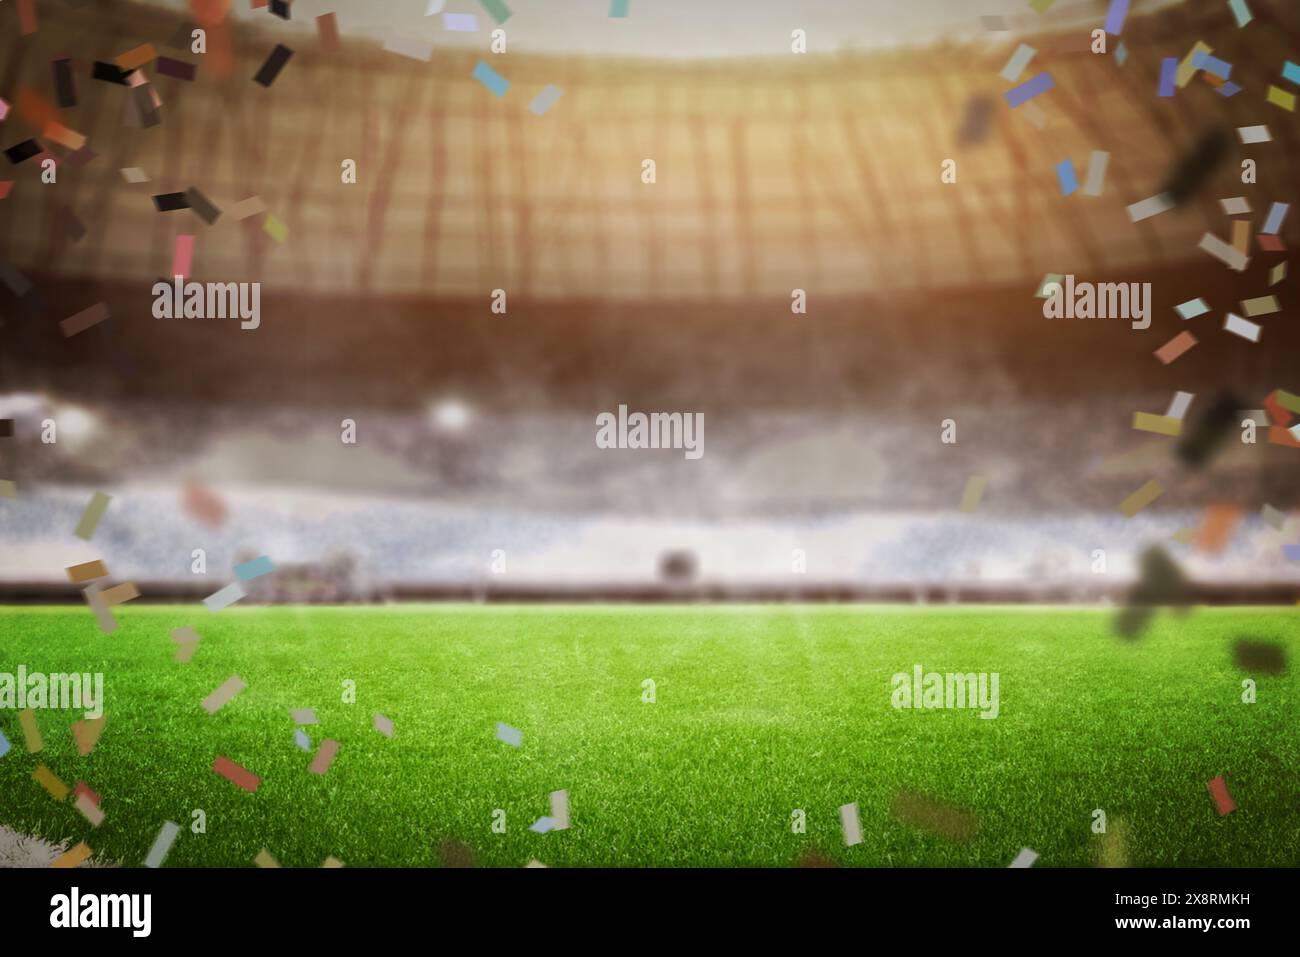 Konfetti in einer Fußballstadionfeier mit leerem Platz in der Mitte, perfekt für Produkt- oder Markenwerbung bei Sportveranstaltungen Stockfoto